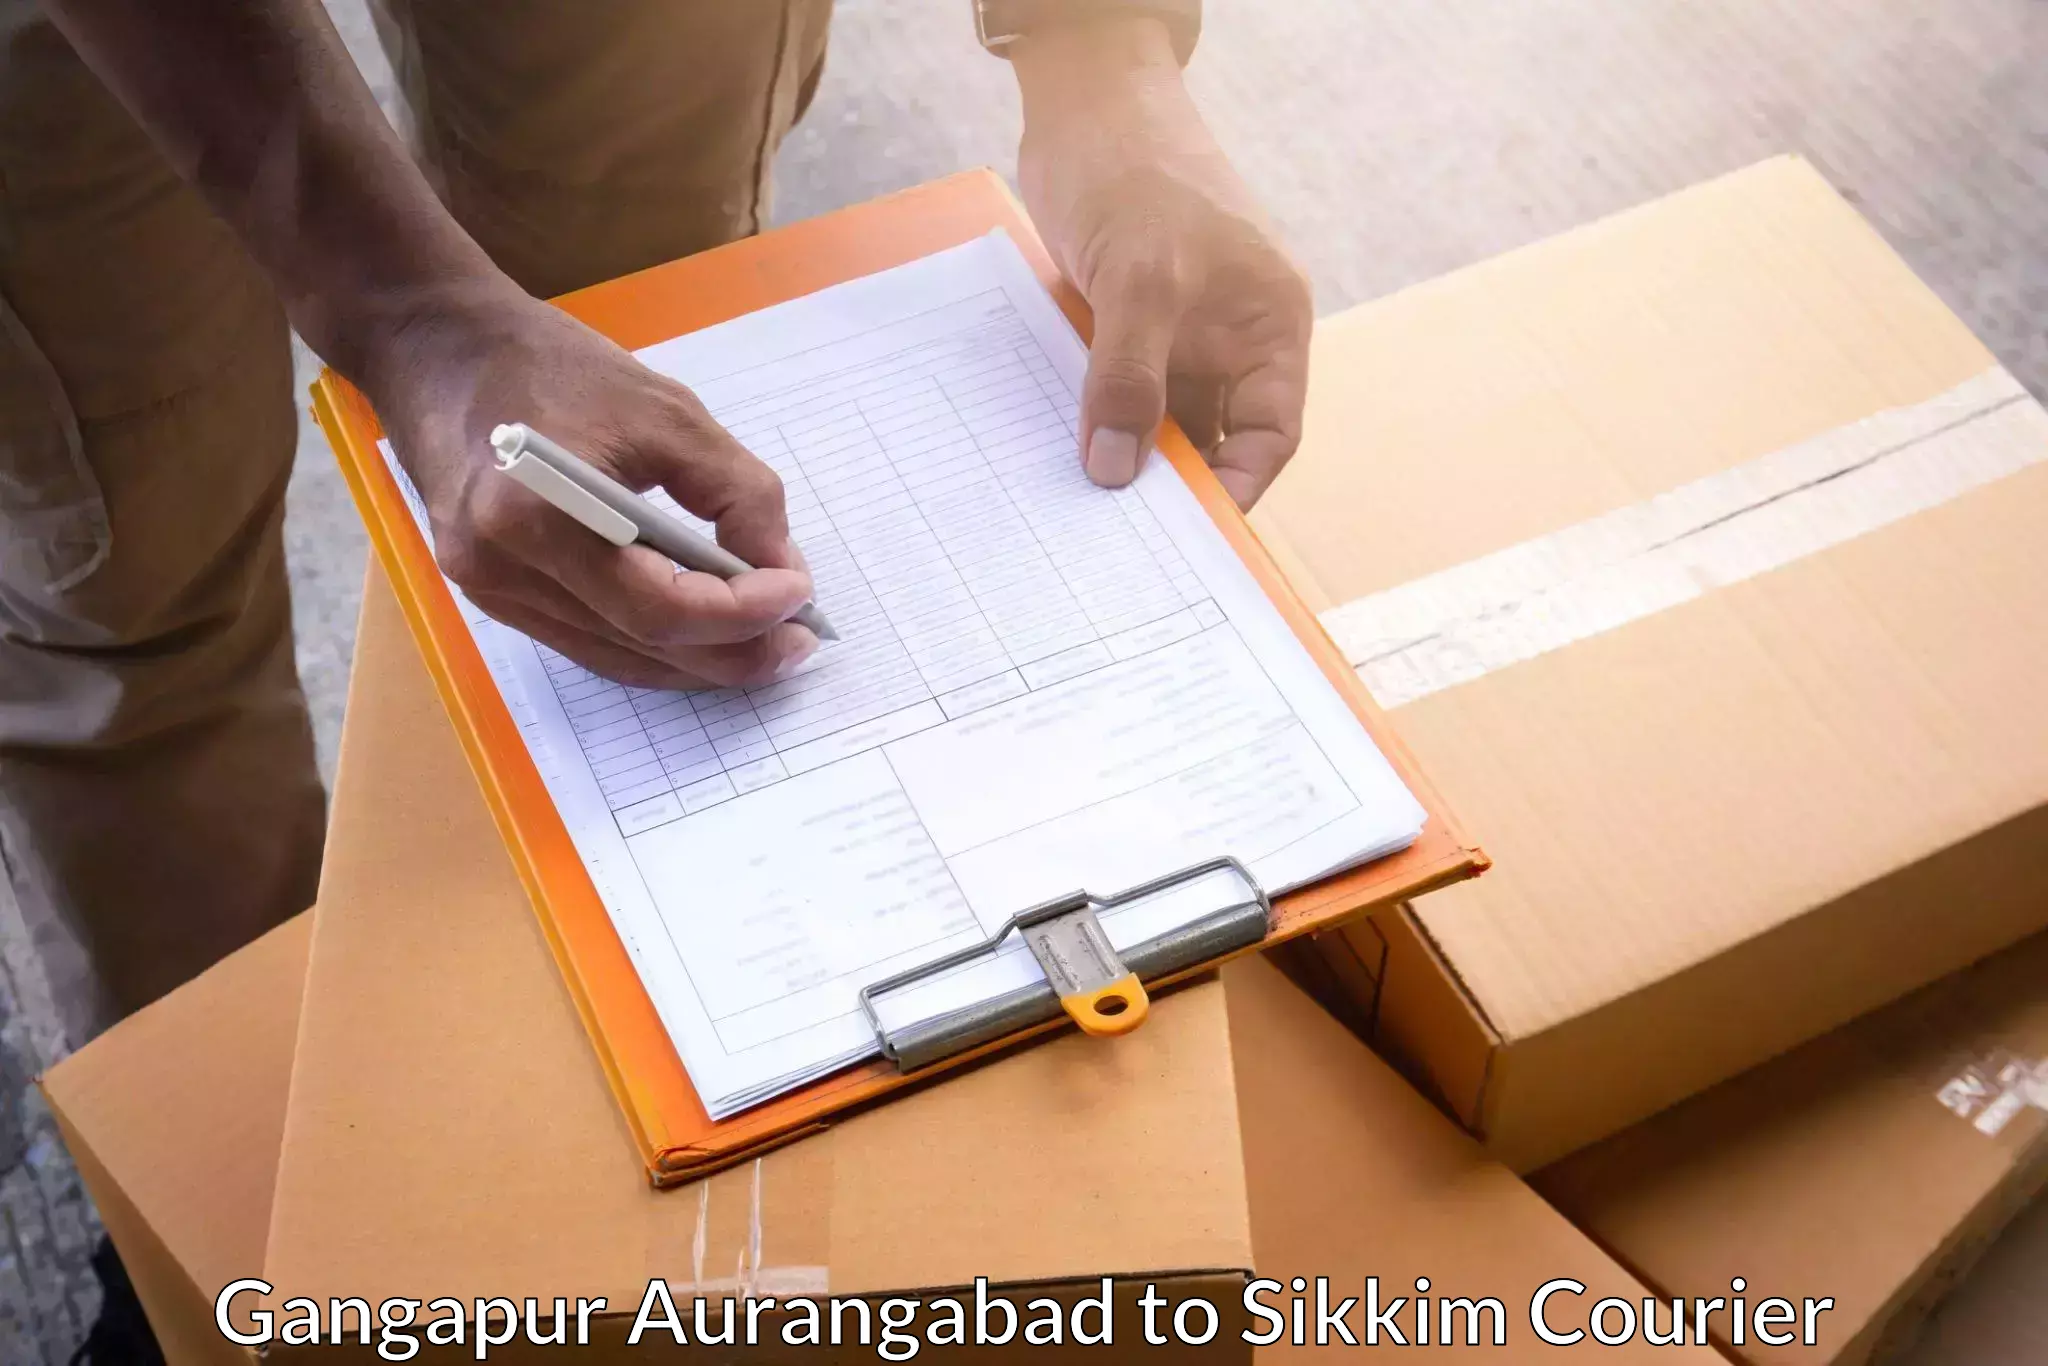 Reliable parcel services Gangapur Aurangabad to South Sikkim